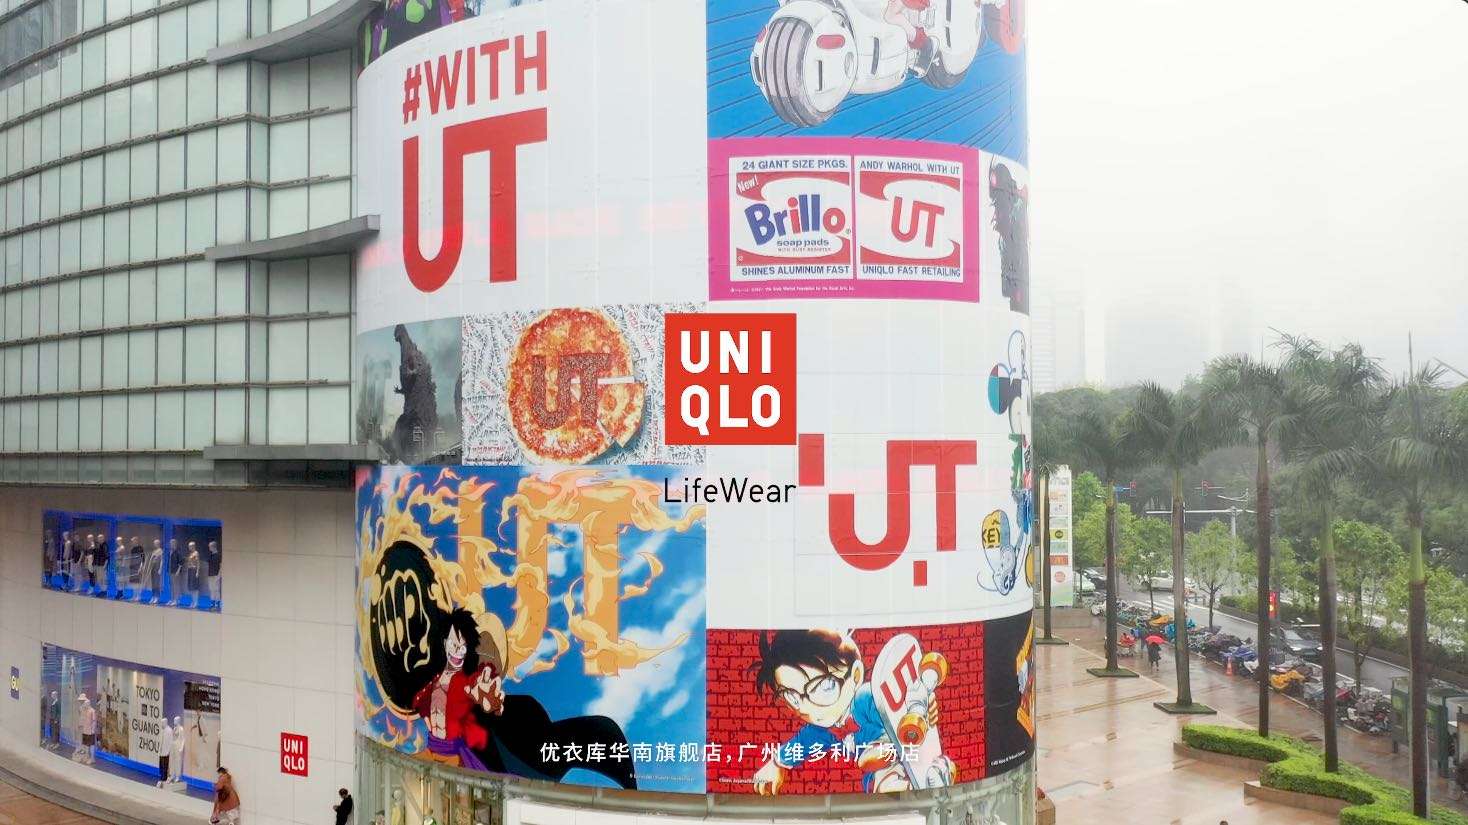 Uniqlo 广州维多利宣传片